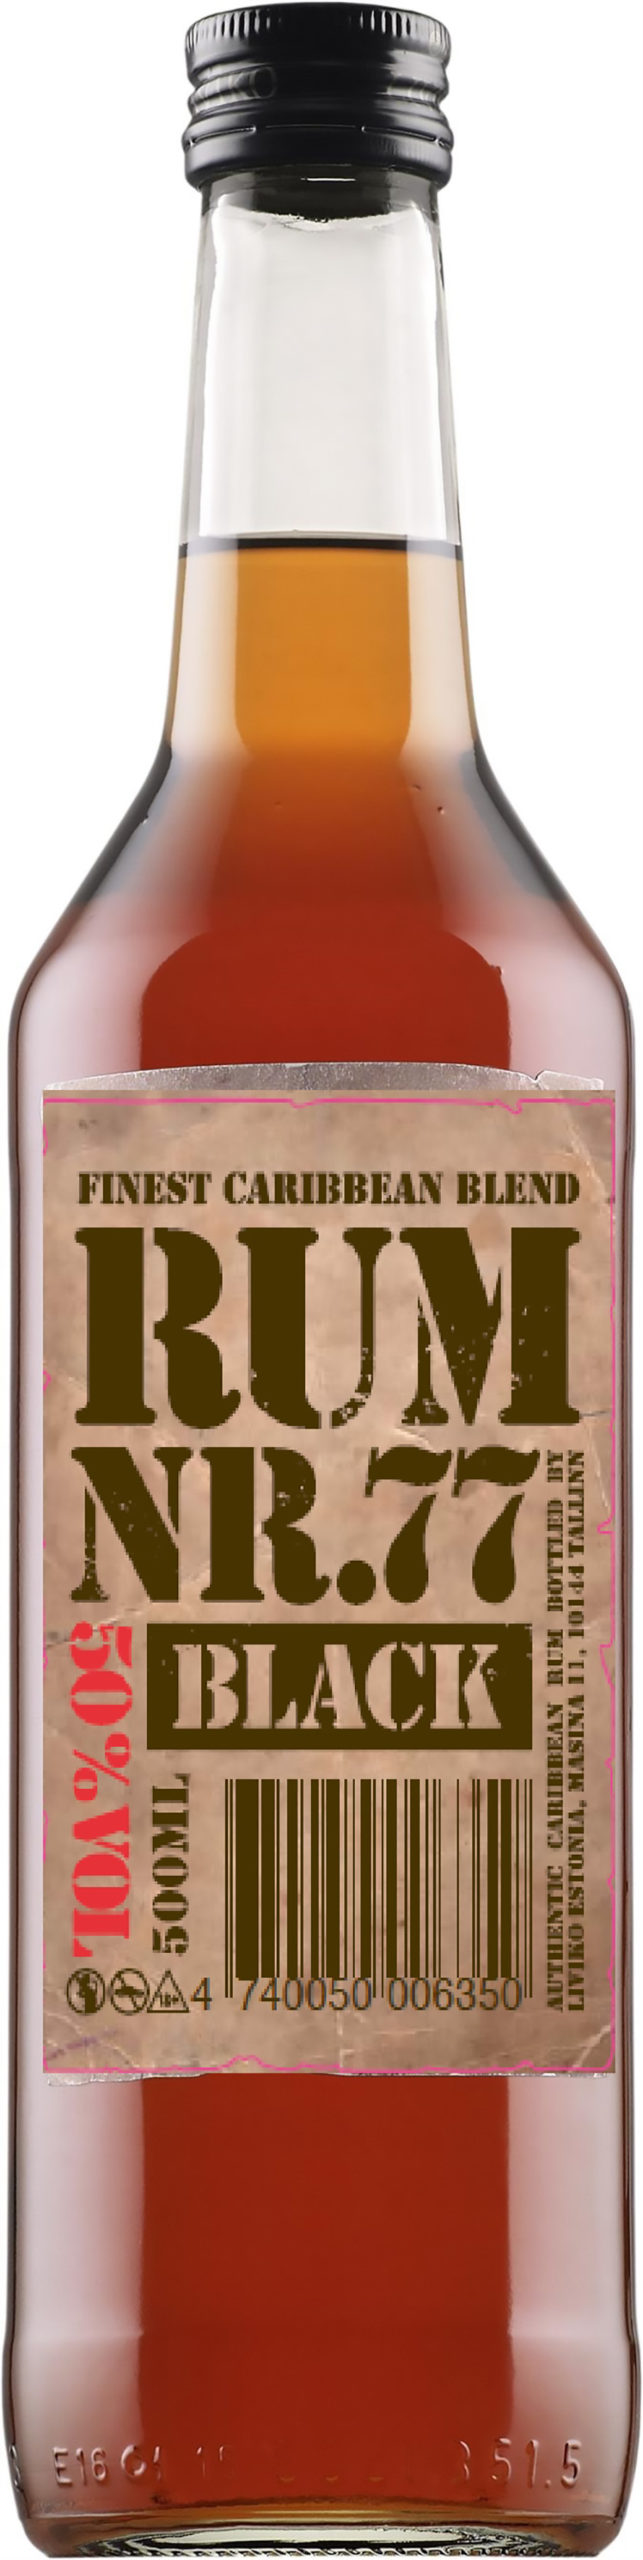 Rum Nr. 77 Black